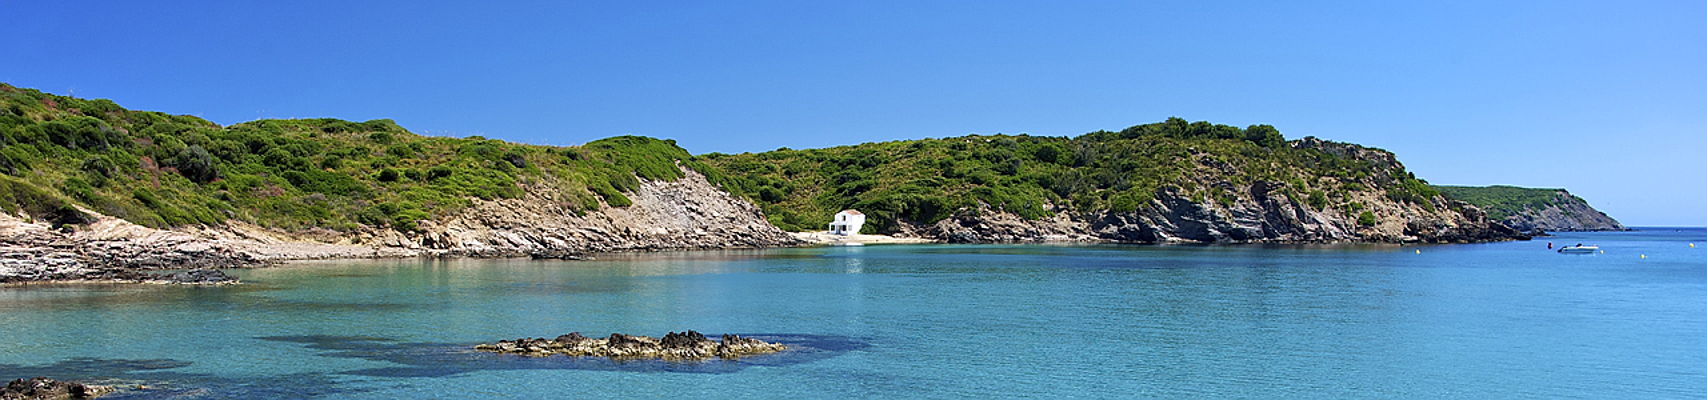  Mahón
- Käufer einer Villa oder eines Apartments erwartet auf Menorca ein beeindruckendes kulturelles Angebot